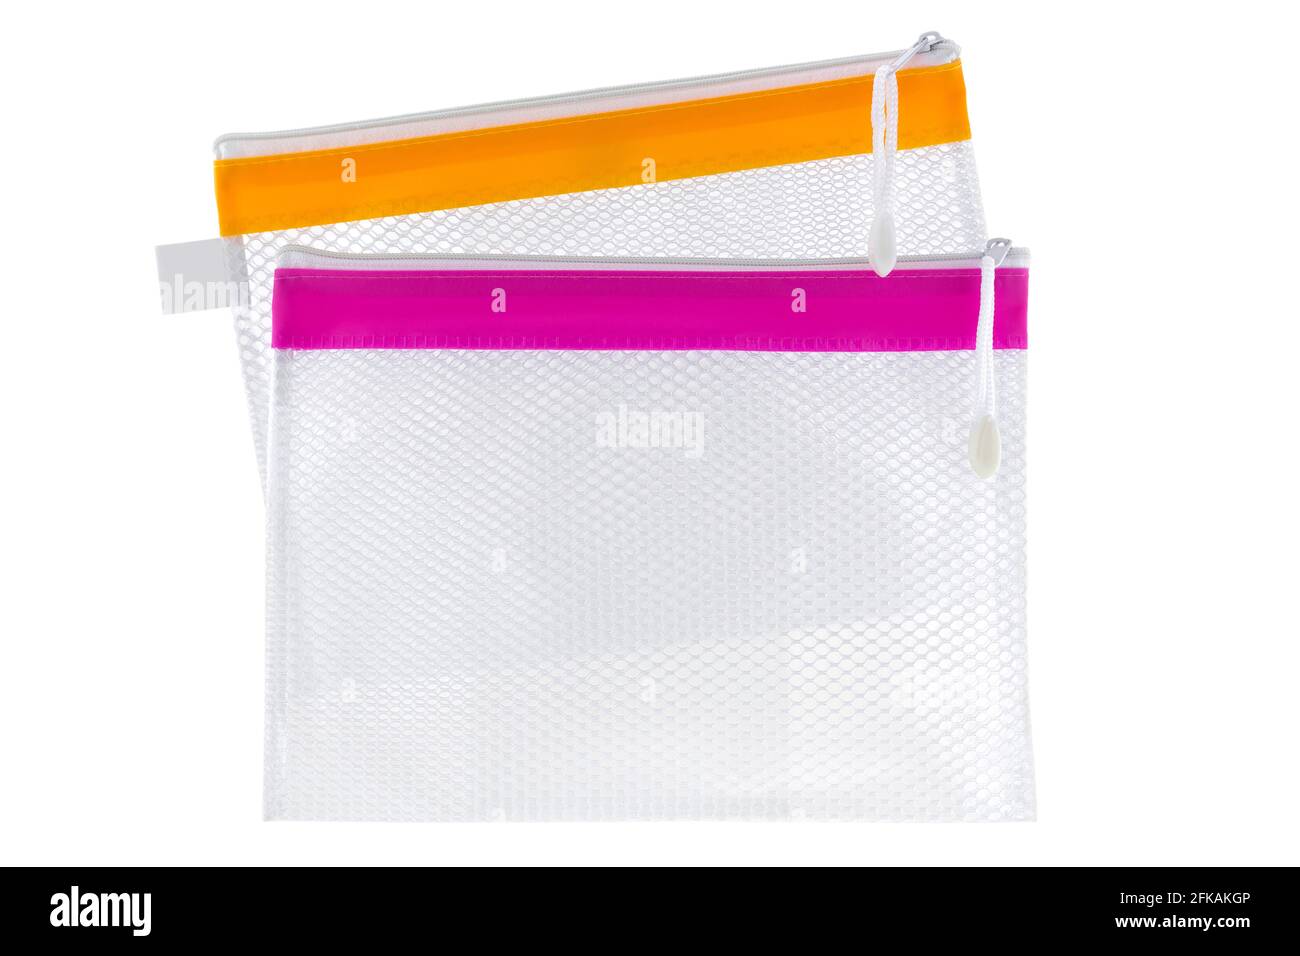 PVC transparente de transparente Idealmente utilizado como bolsa cosmética, estuche de papel para archivo de documentos aislado sobre fondo blanco Fotografía de - Alamy